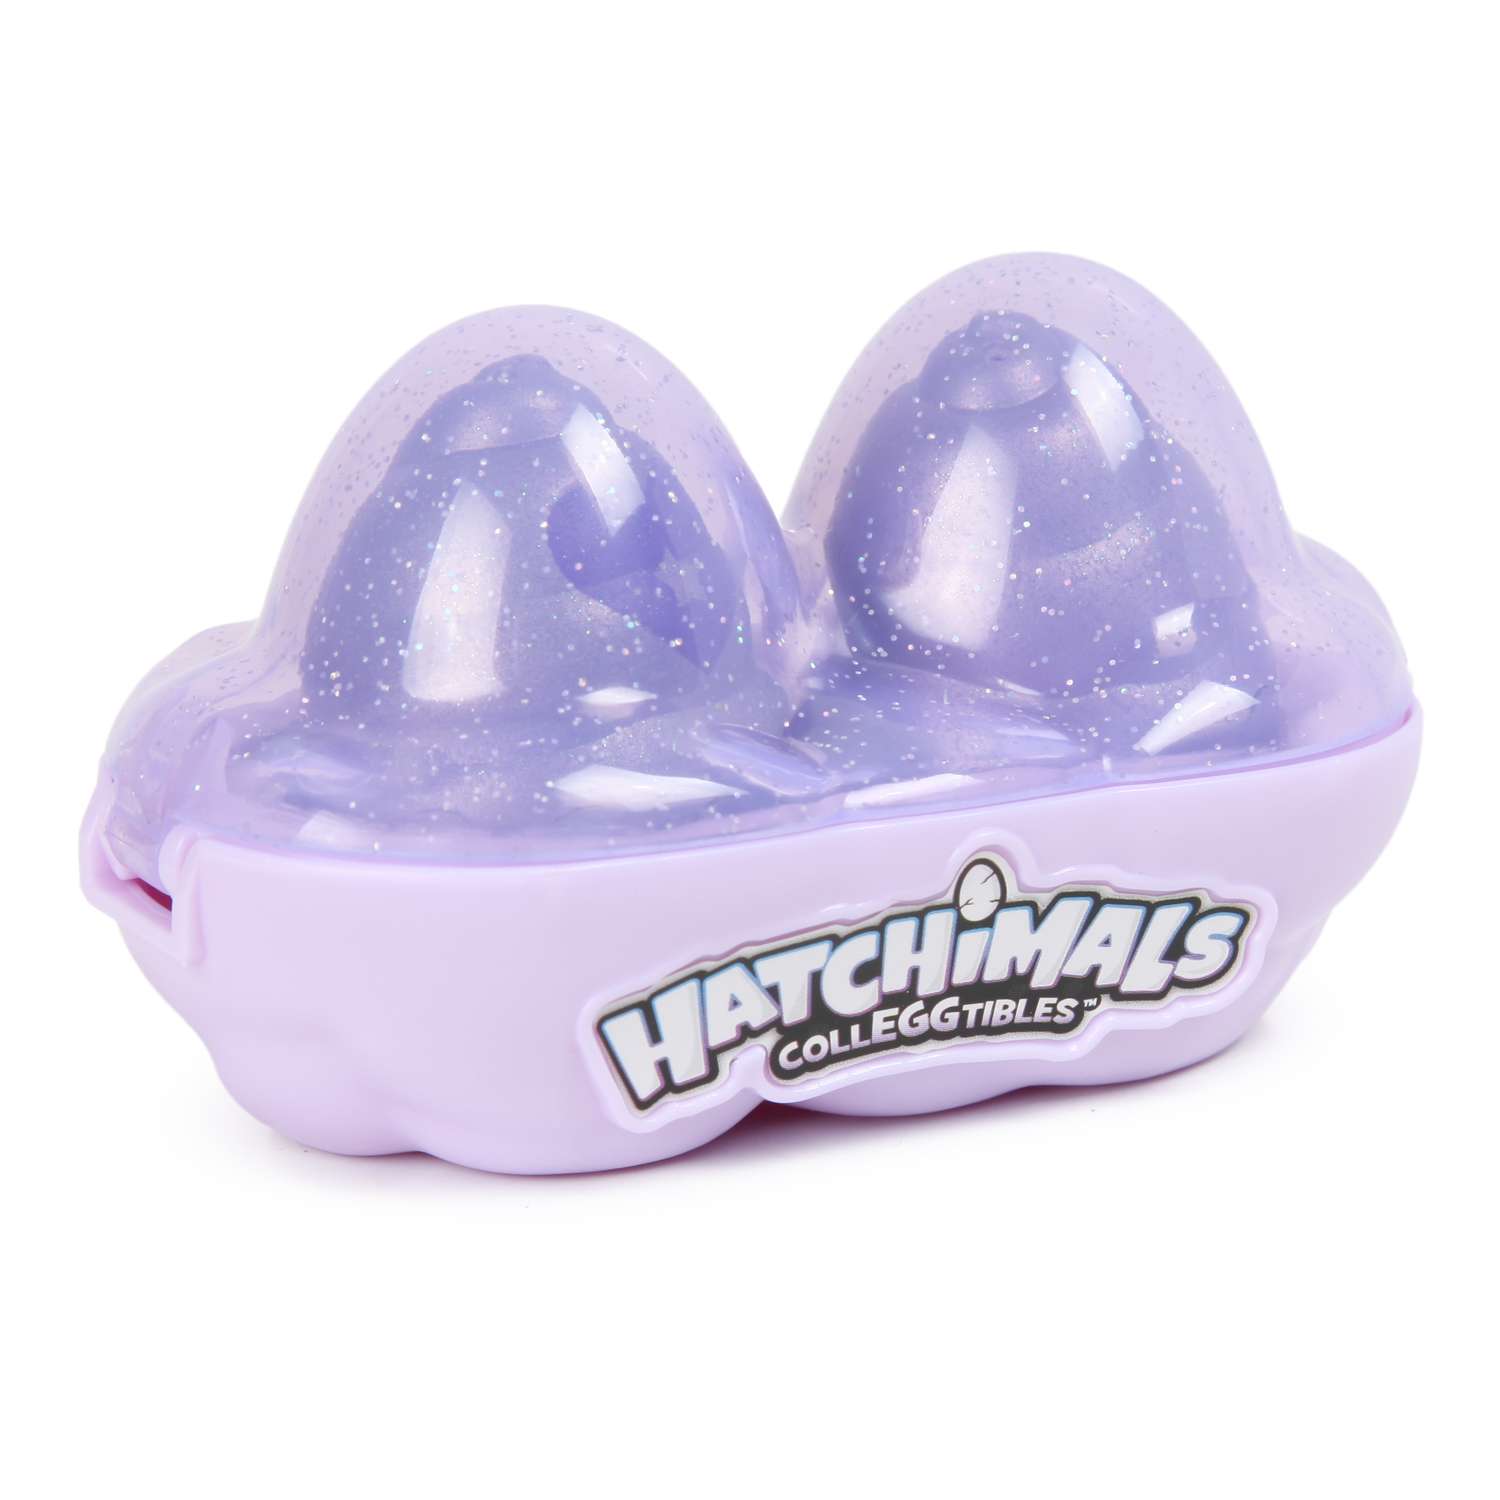 Набор Hatchimals яйца коллекционные 2 шт. в непрозрачной упаковке (Сюрприз) 6043931 - фото 2